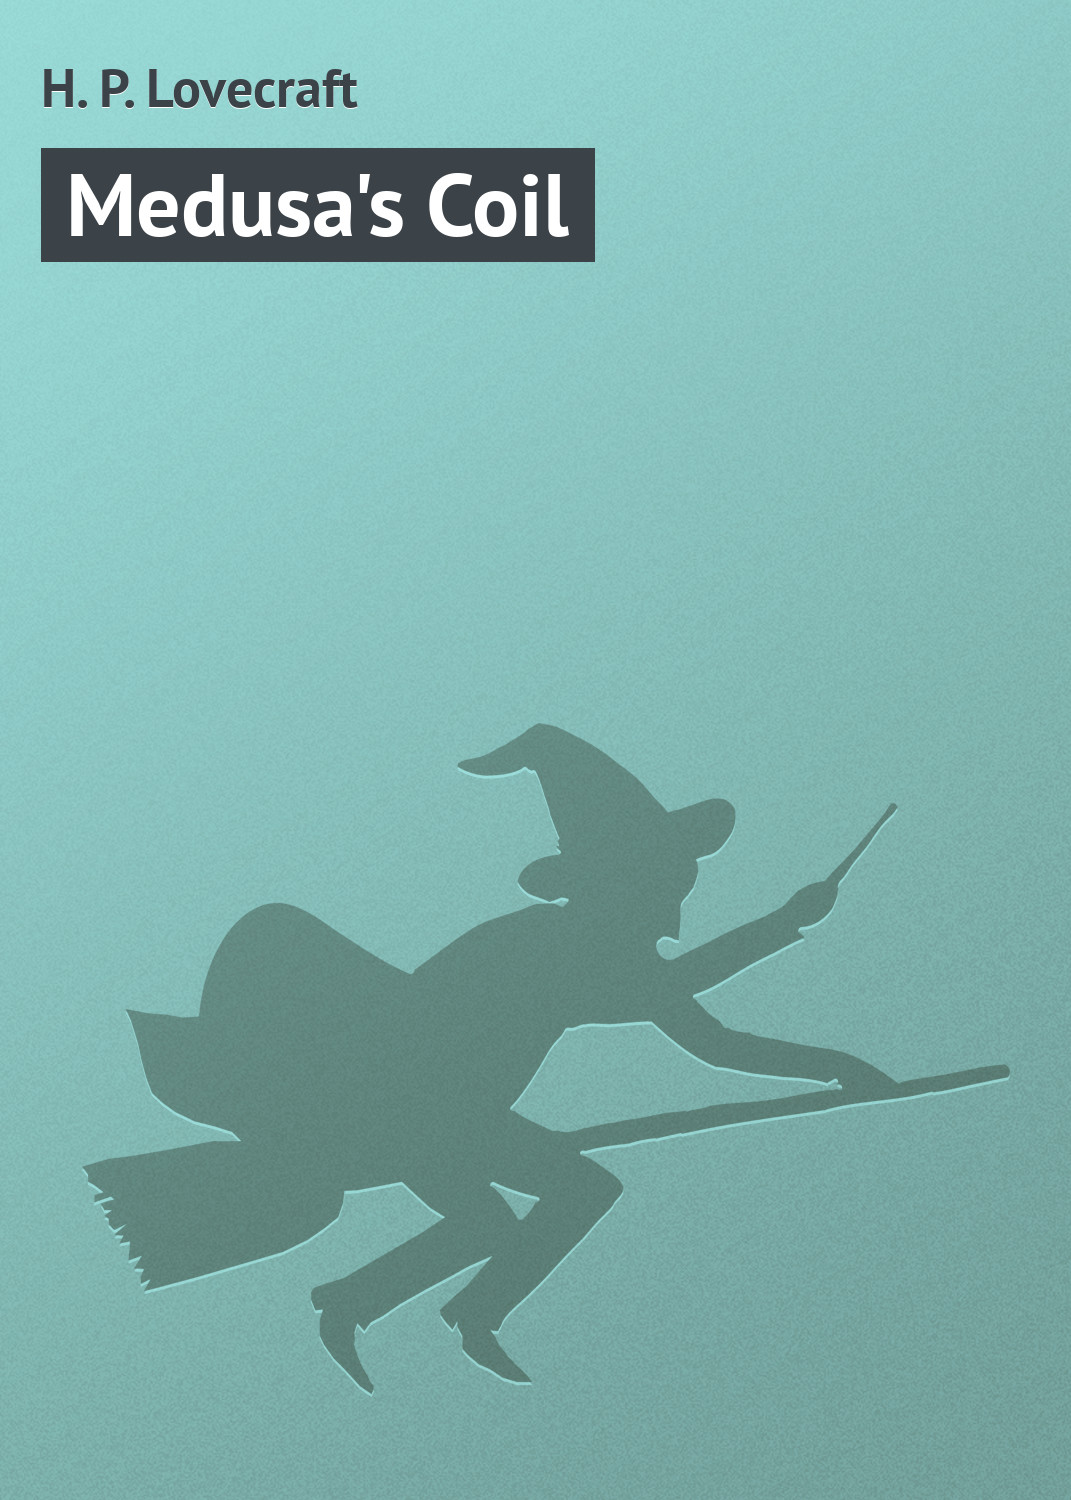 Книга Medusa's Coil из серии , созданная H. Lovecraft, может относится к жанру Зарубежное: Прочее, Зарубежная классика, Ужасы и Мистика. Стоимость электронной книги Medusa's Coil с идентификатором 7610150 составляет 29.95 руб.